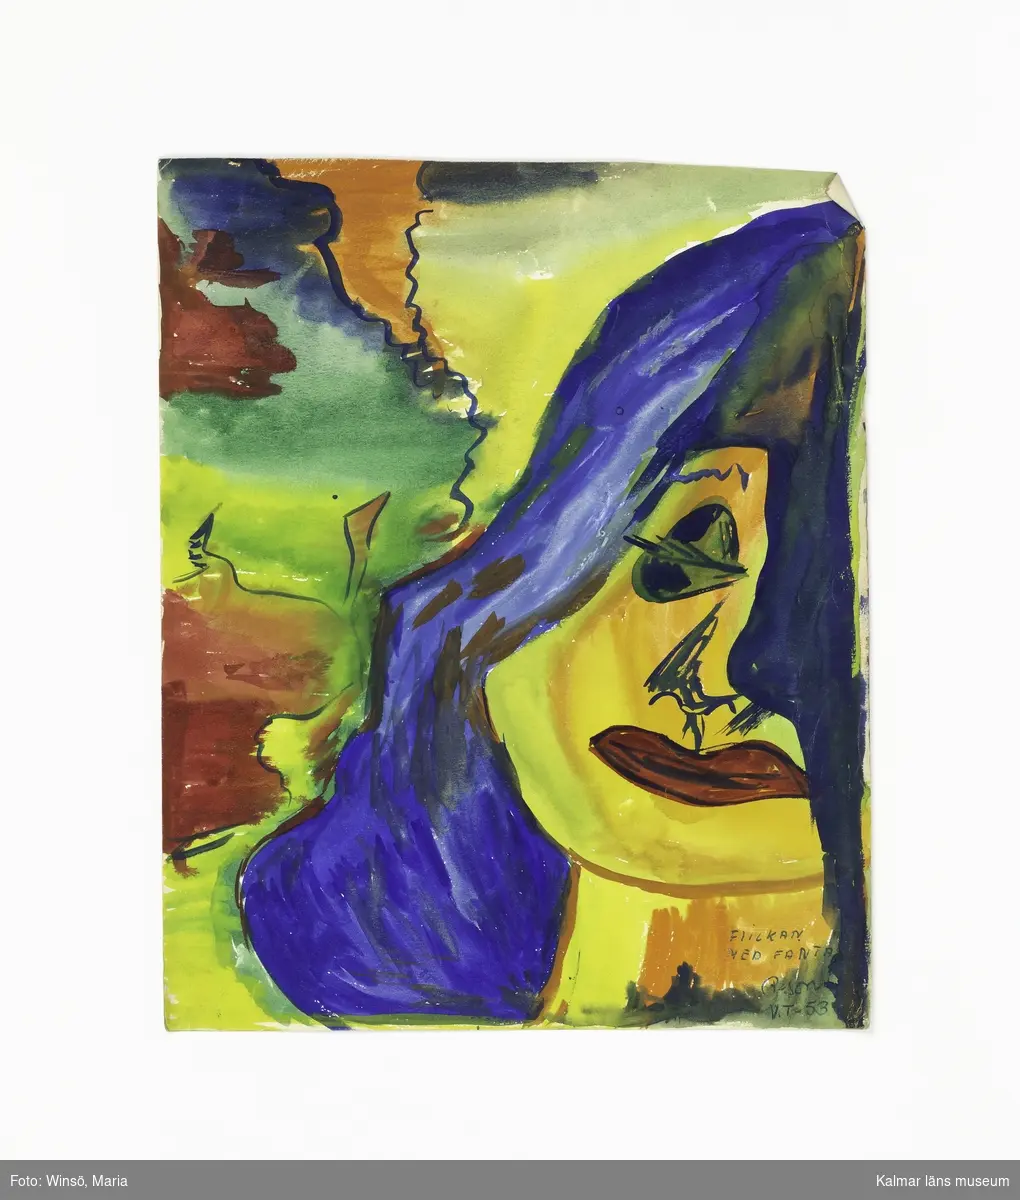 1. Kvinna med blått ansikte, gröna ögon och brunt hår. Titel: "Ilska". 2: Kvinna med gult ansikte och blått hår på flerfärgad bakgrund. Titel: "FLICKAN MED FANTASI".